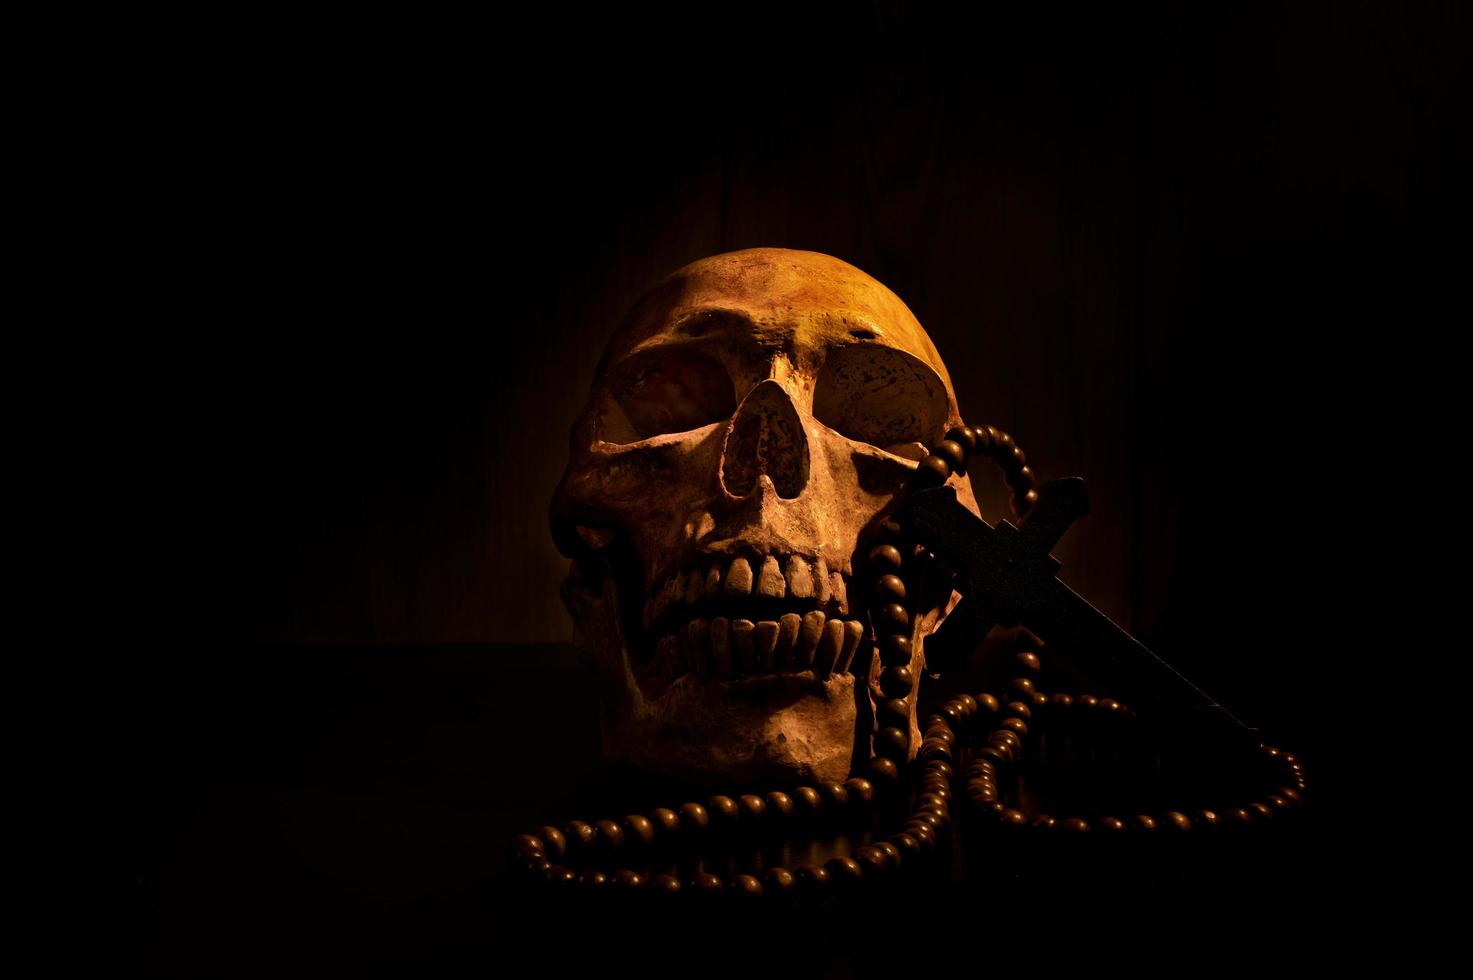 stilleben konst av en mänsklig skalle och pärla på en svart bakgrund foto